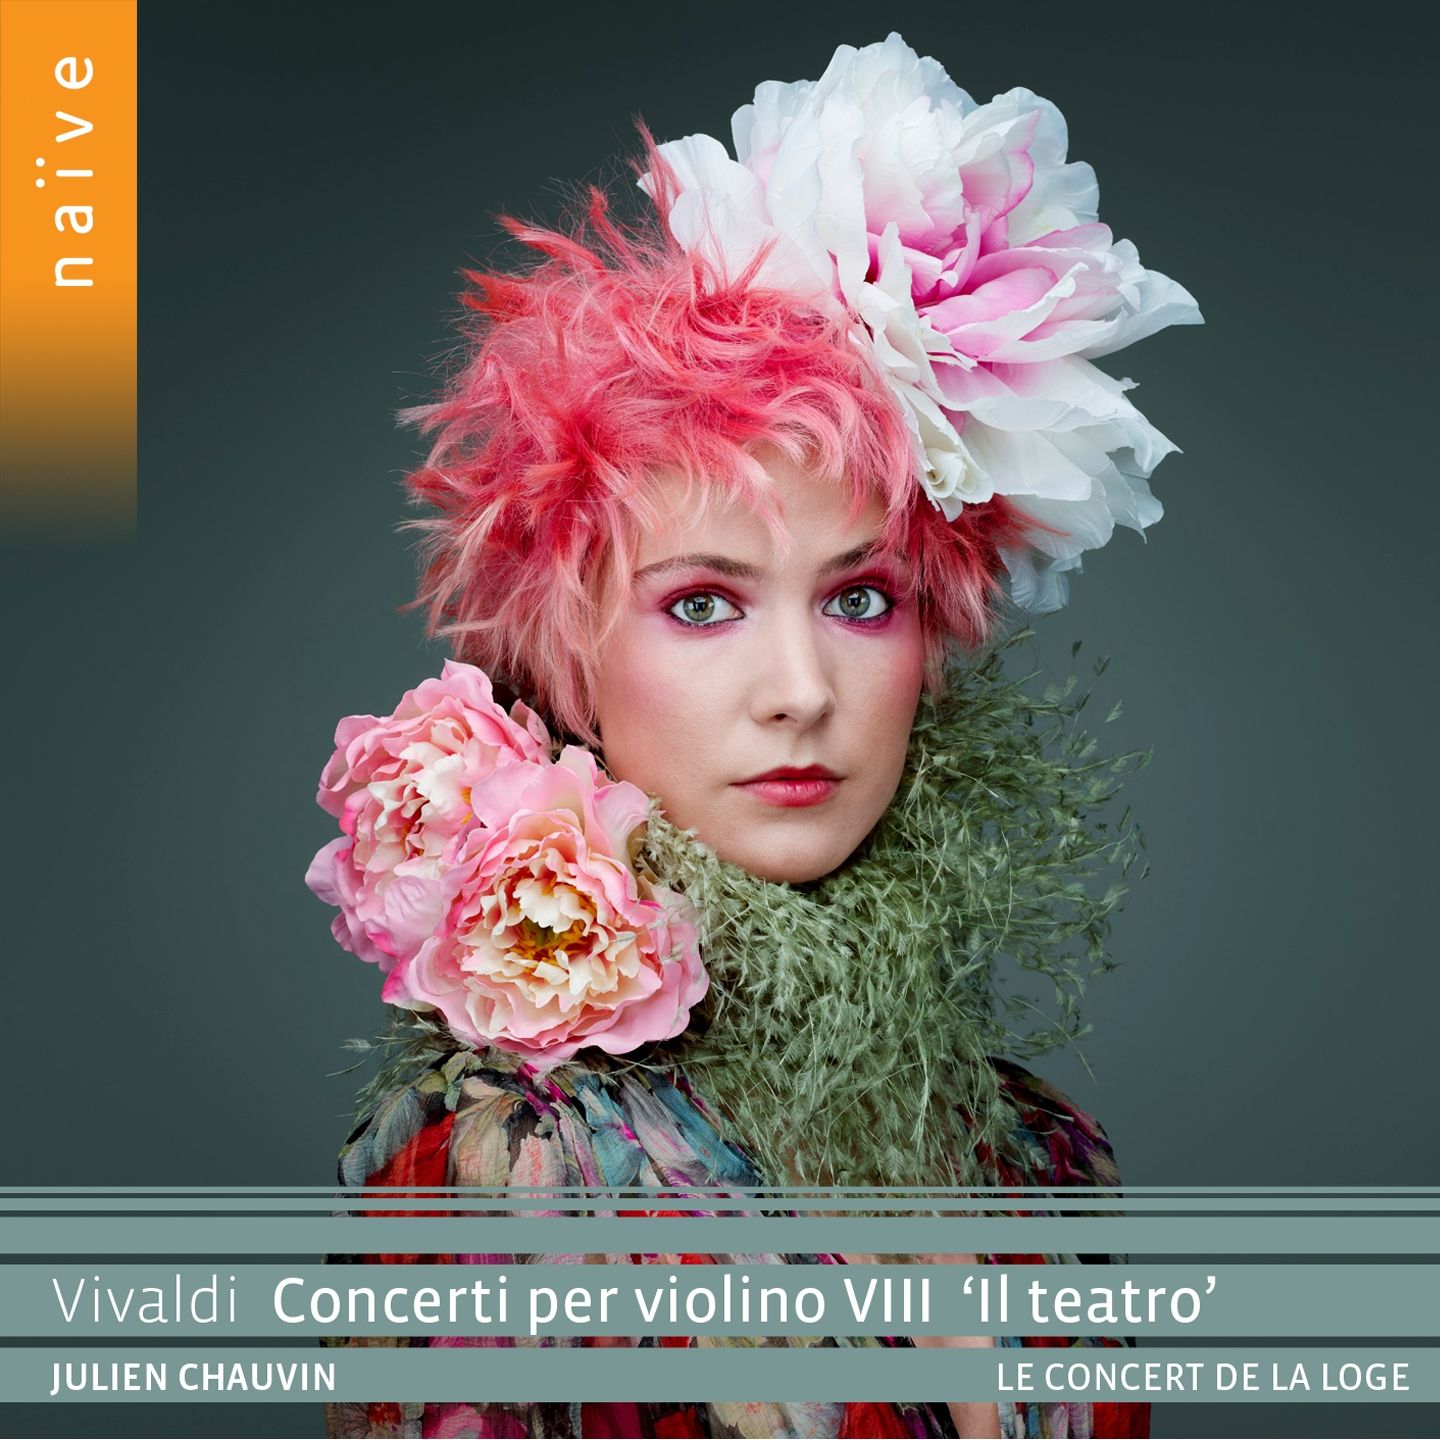 Julien Chauvin, Le Concert de la Loge - VIVALDI Concerti per violino VIII “Il teatro” (2020) [FLAC 24bit/96kHz]